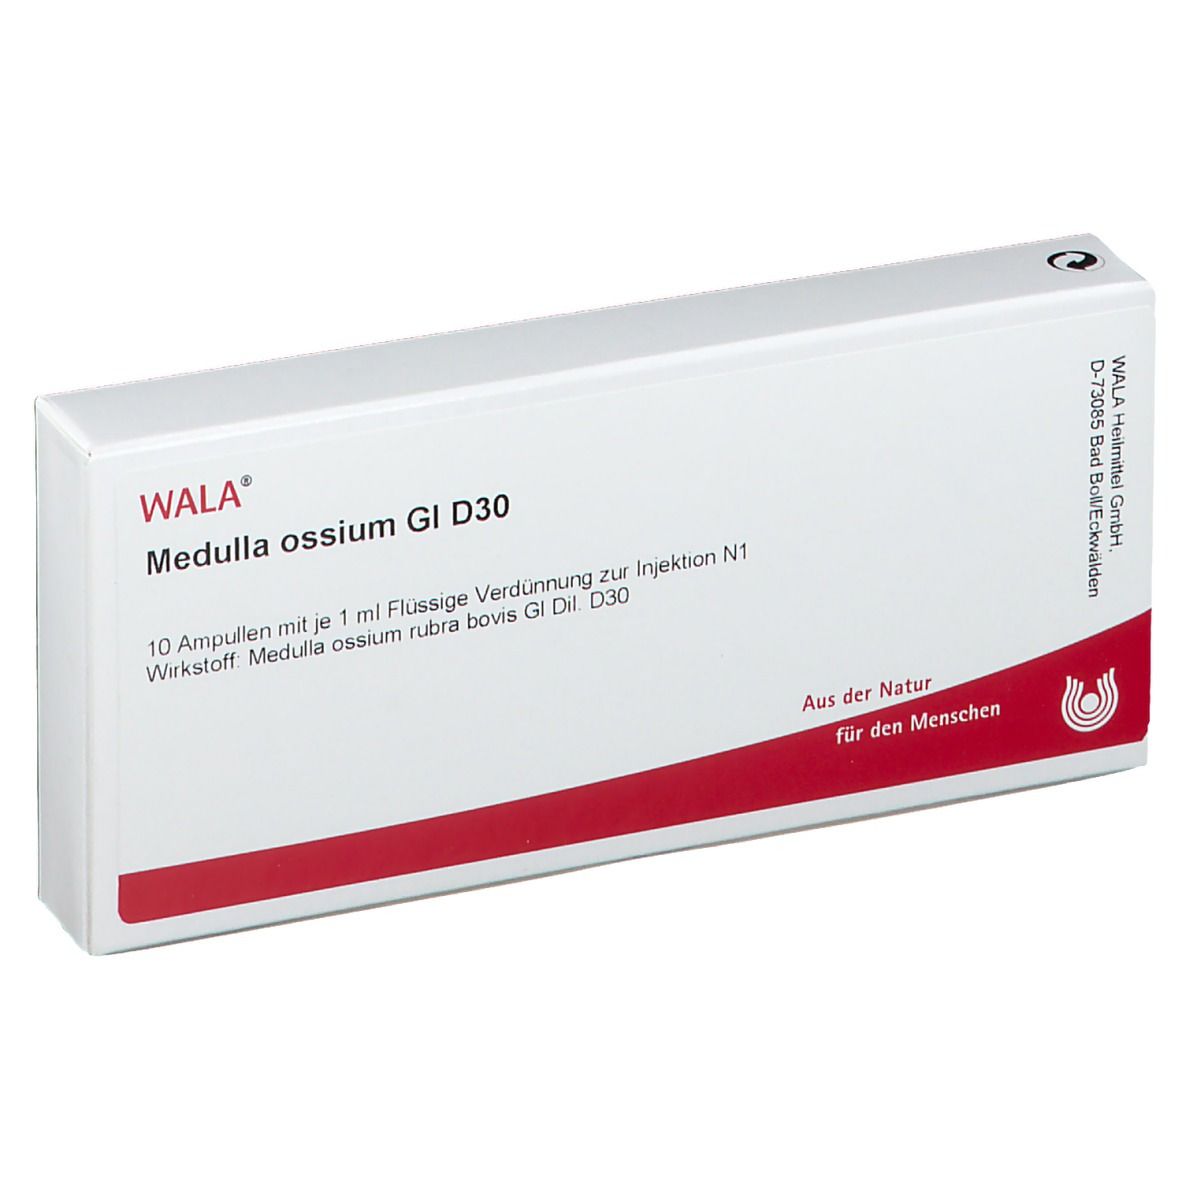 WALA® Medulla Ossium Gl D 30 Ampullen